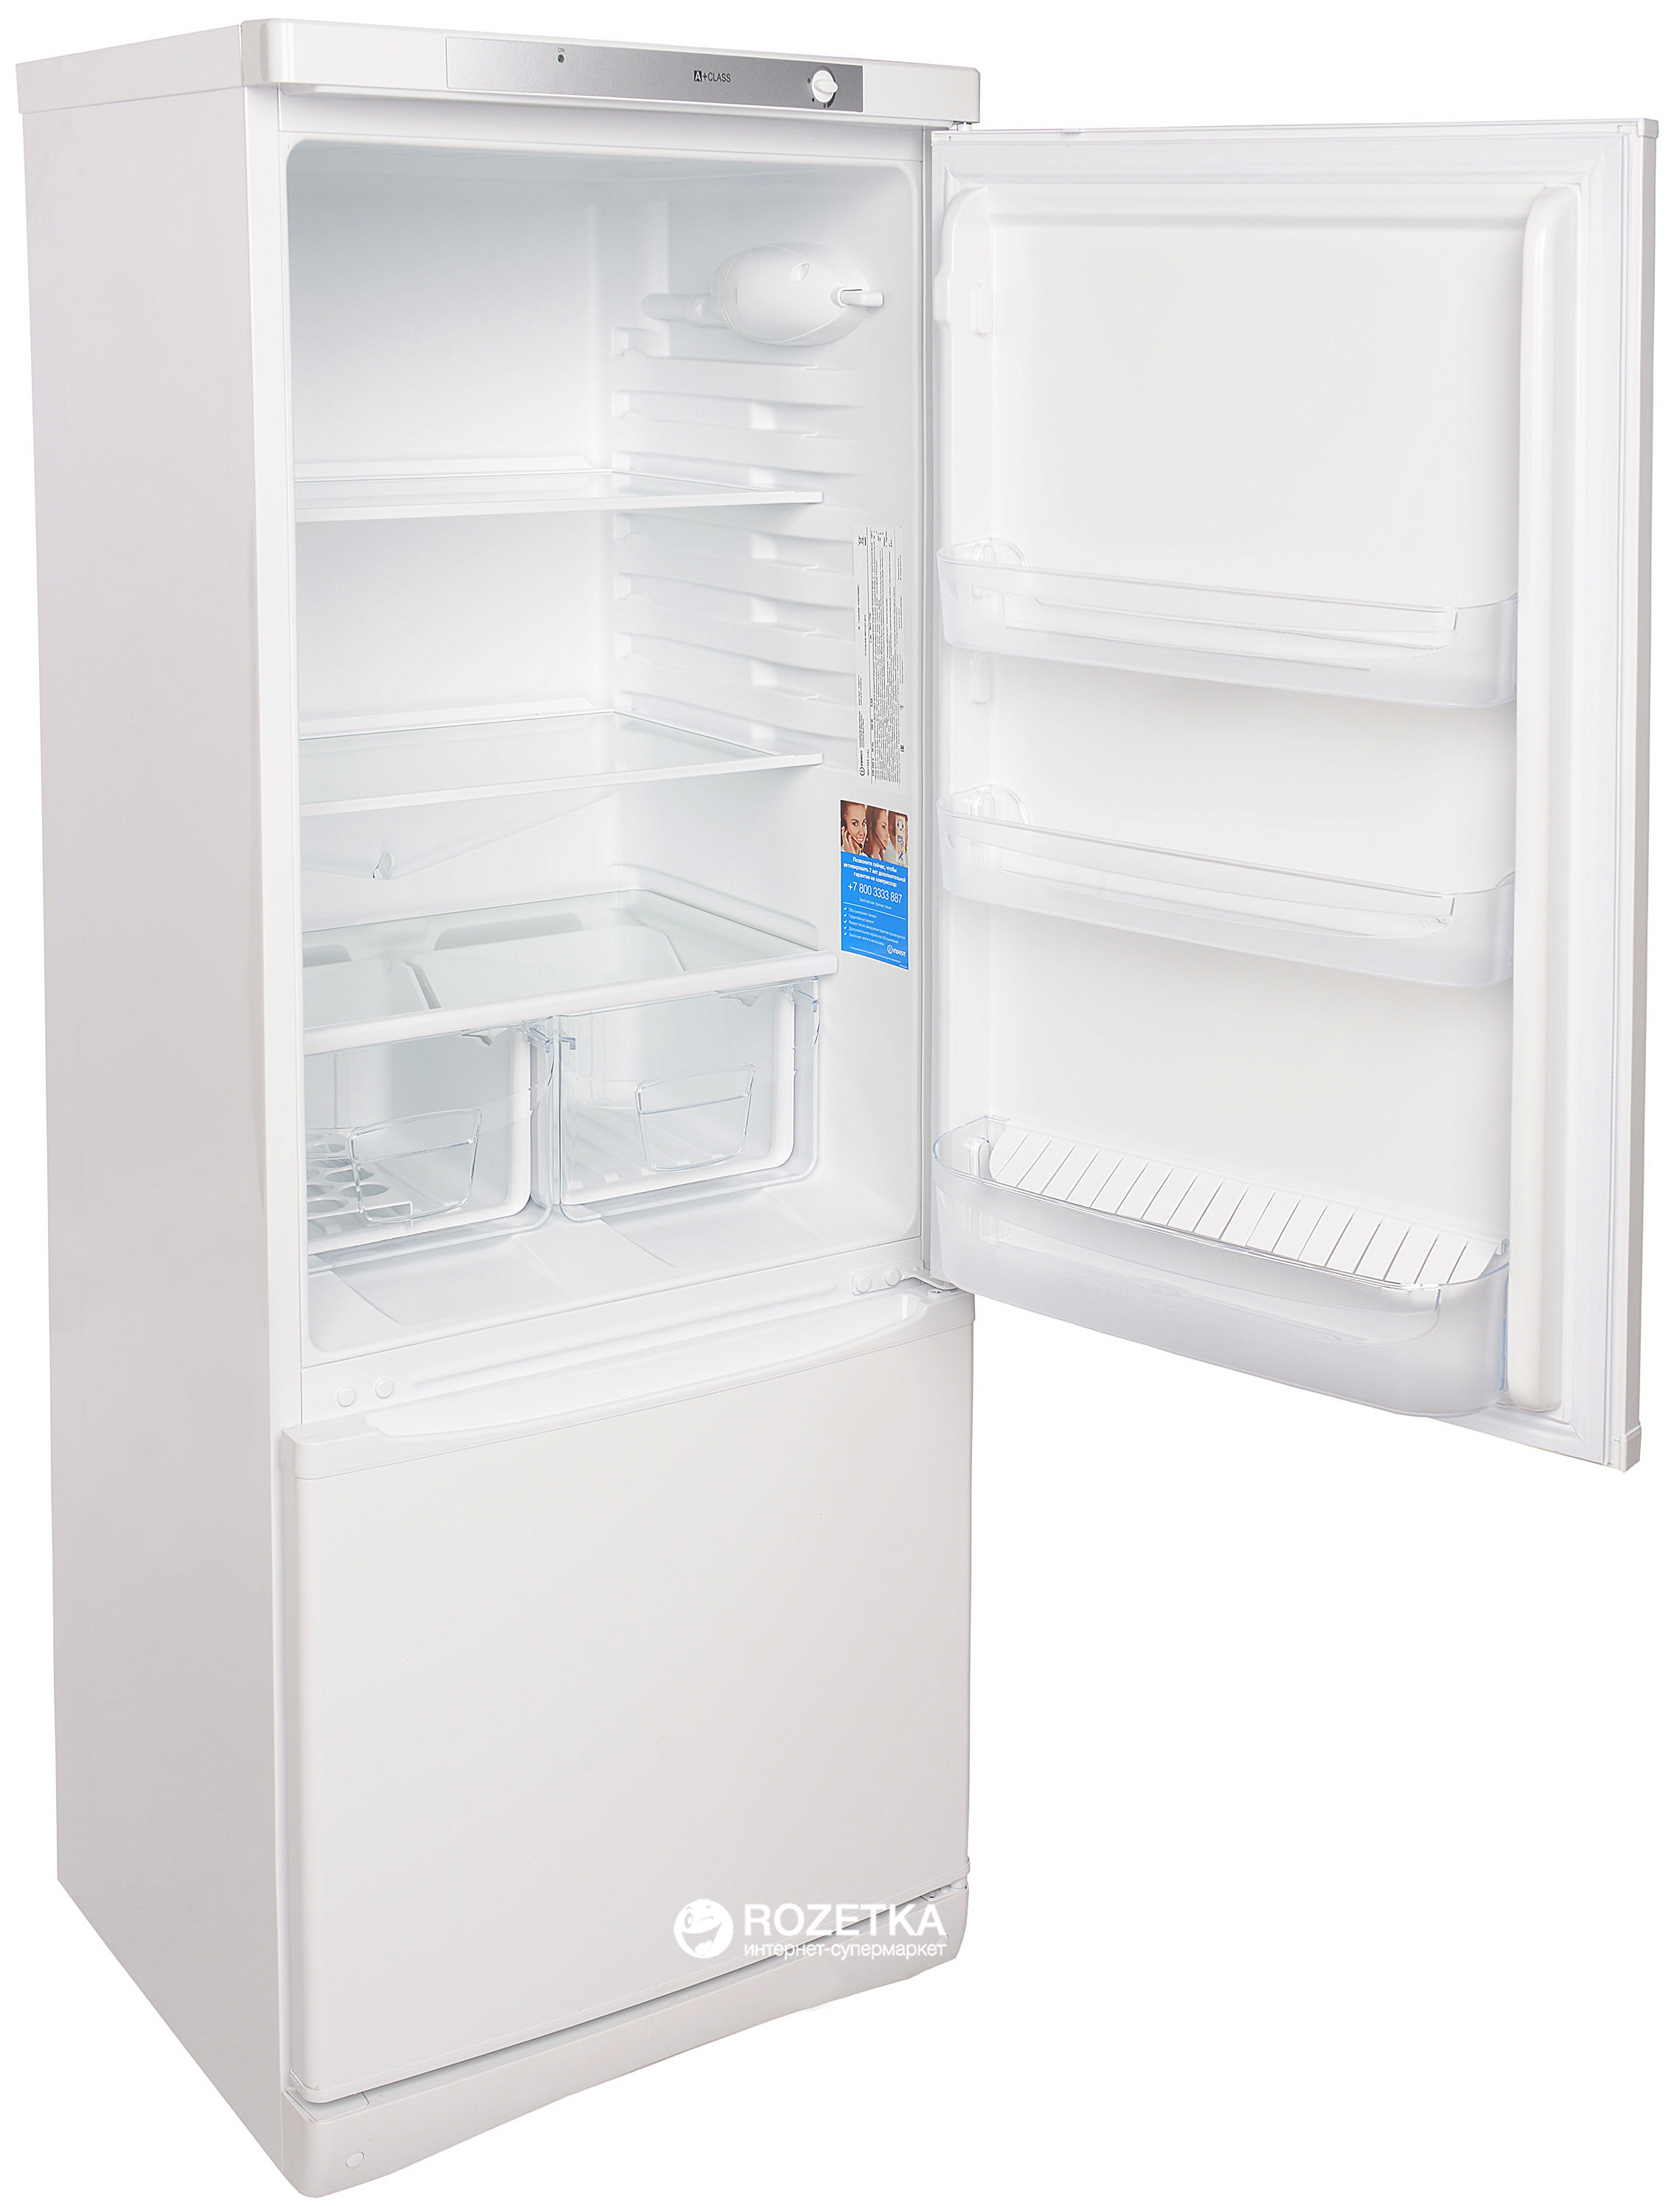 Холодильник индезит двухкамерный модели. Холодильник Индезит 165 см.